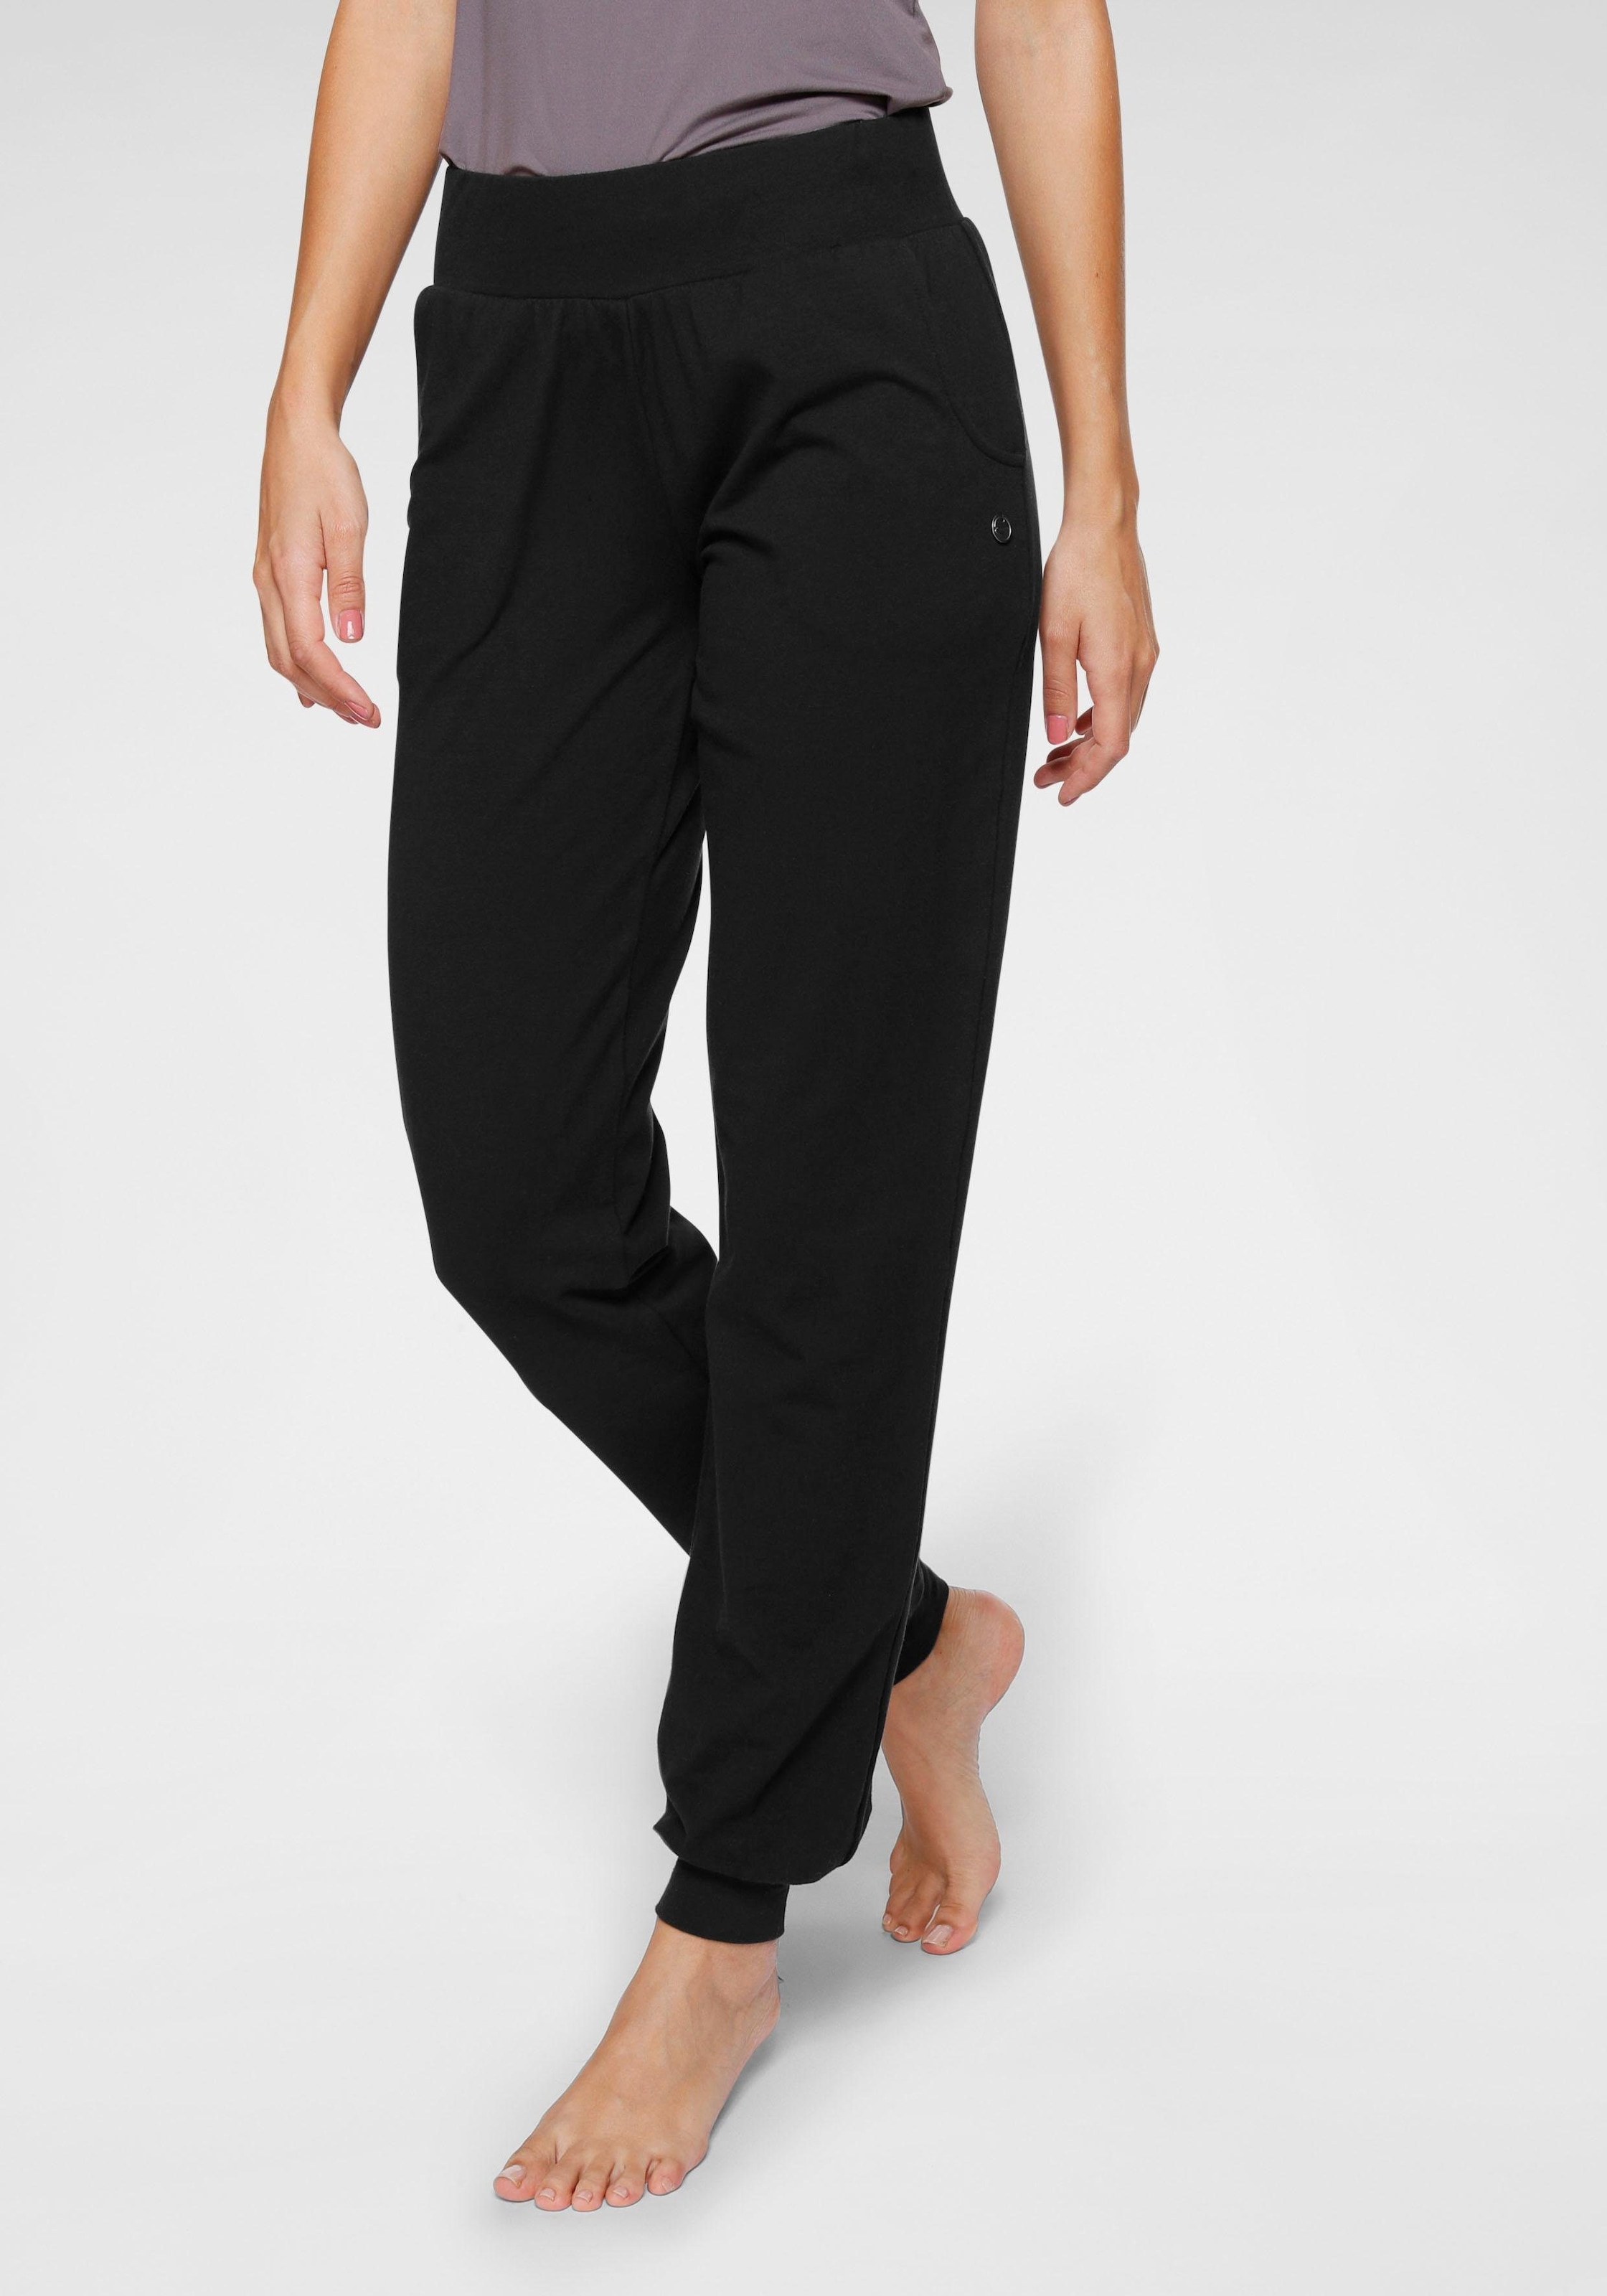 »Soulwear Fit« - & Sportswear - Loose Pants Yoga Ocean Yogahose online Relax kaufen